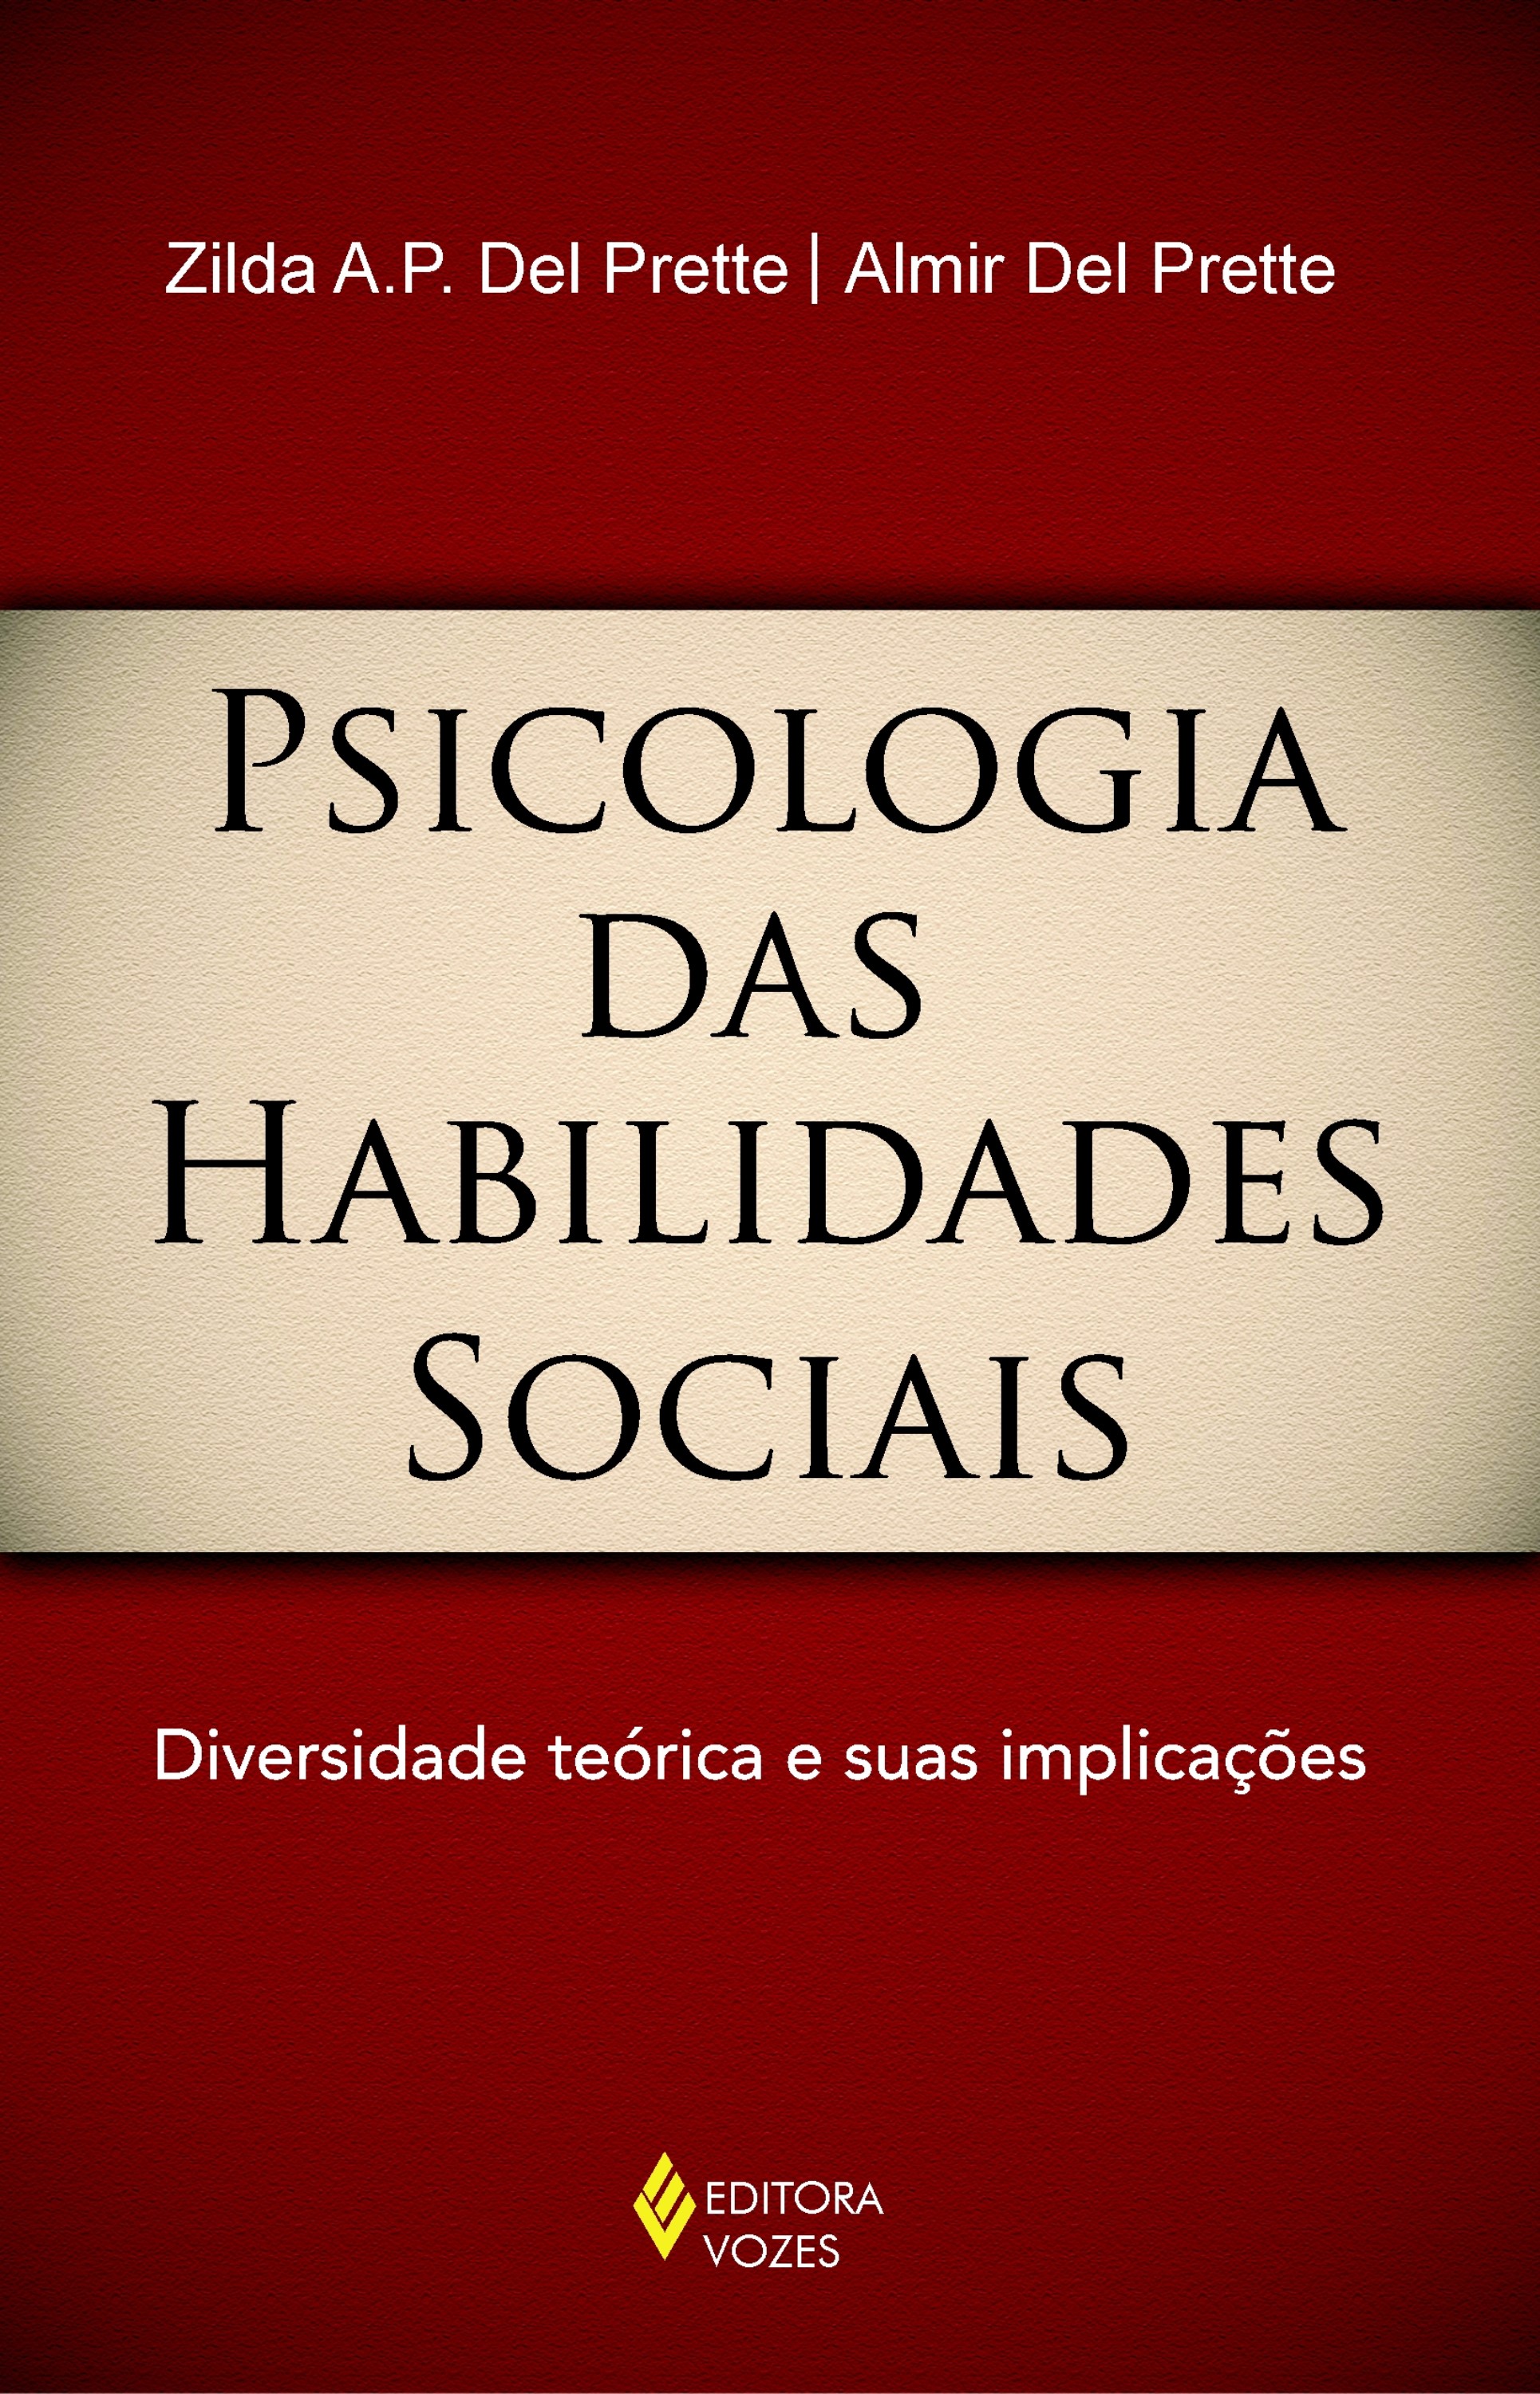 Psicologia das habilidades sociais